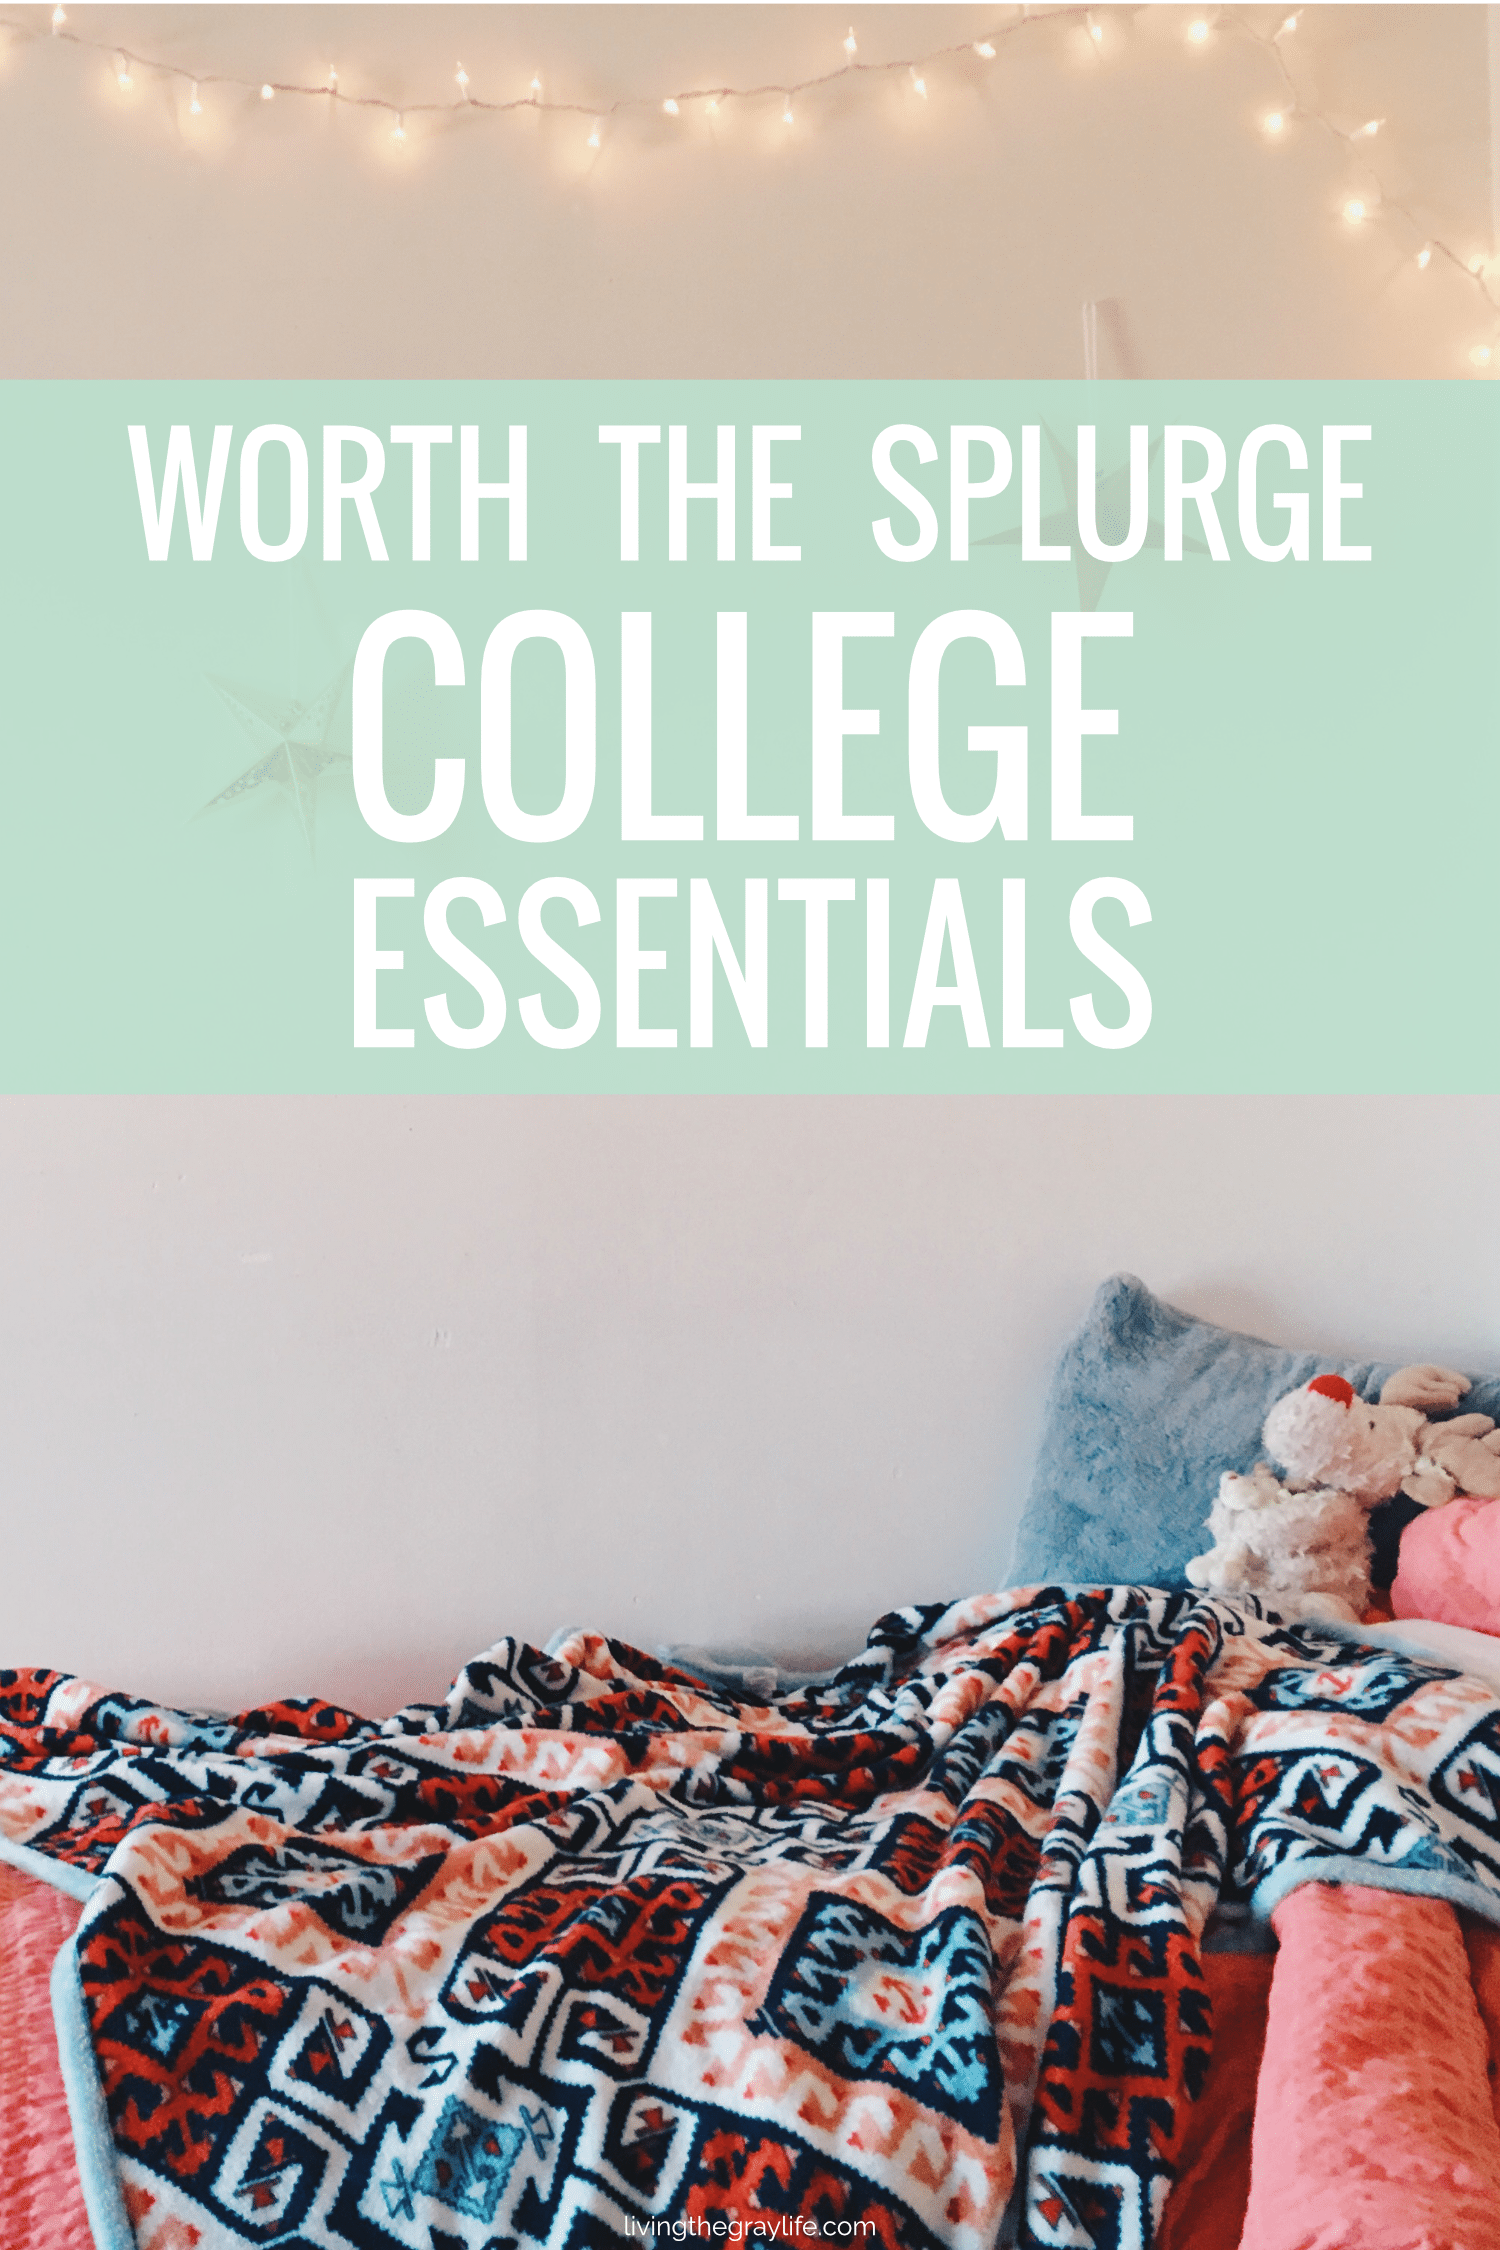 Worth the Splurge: College Essentials